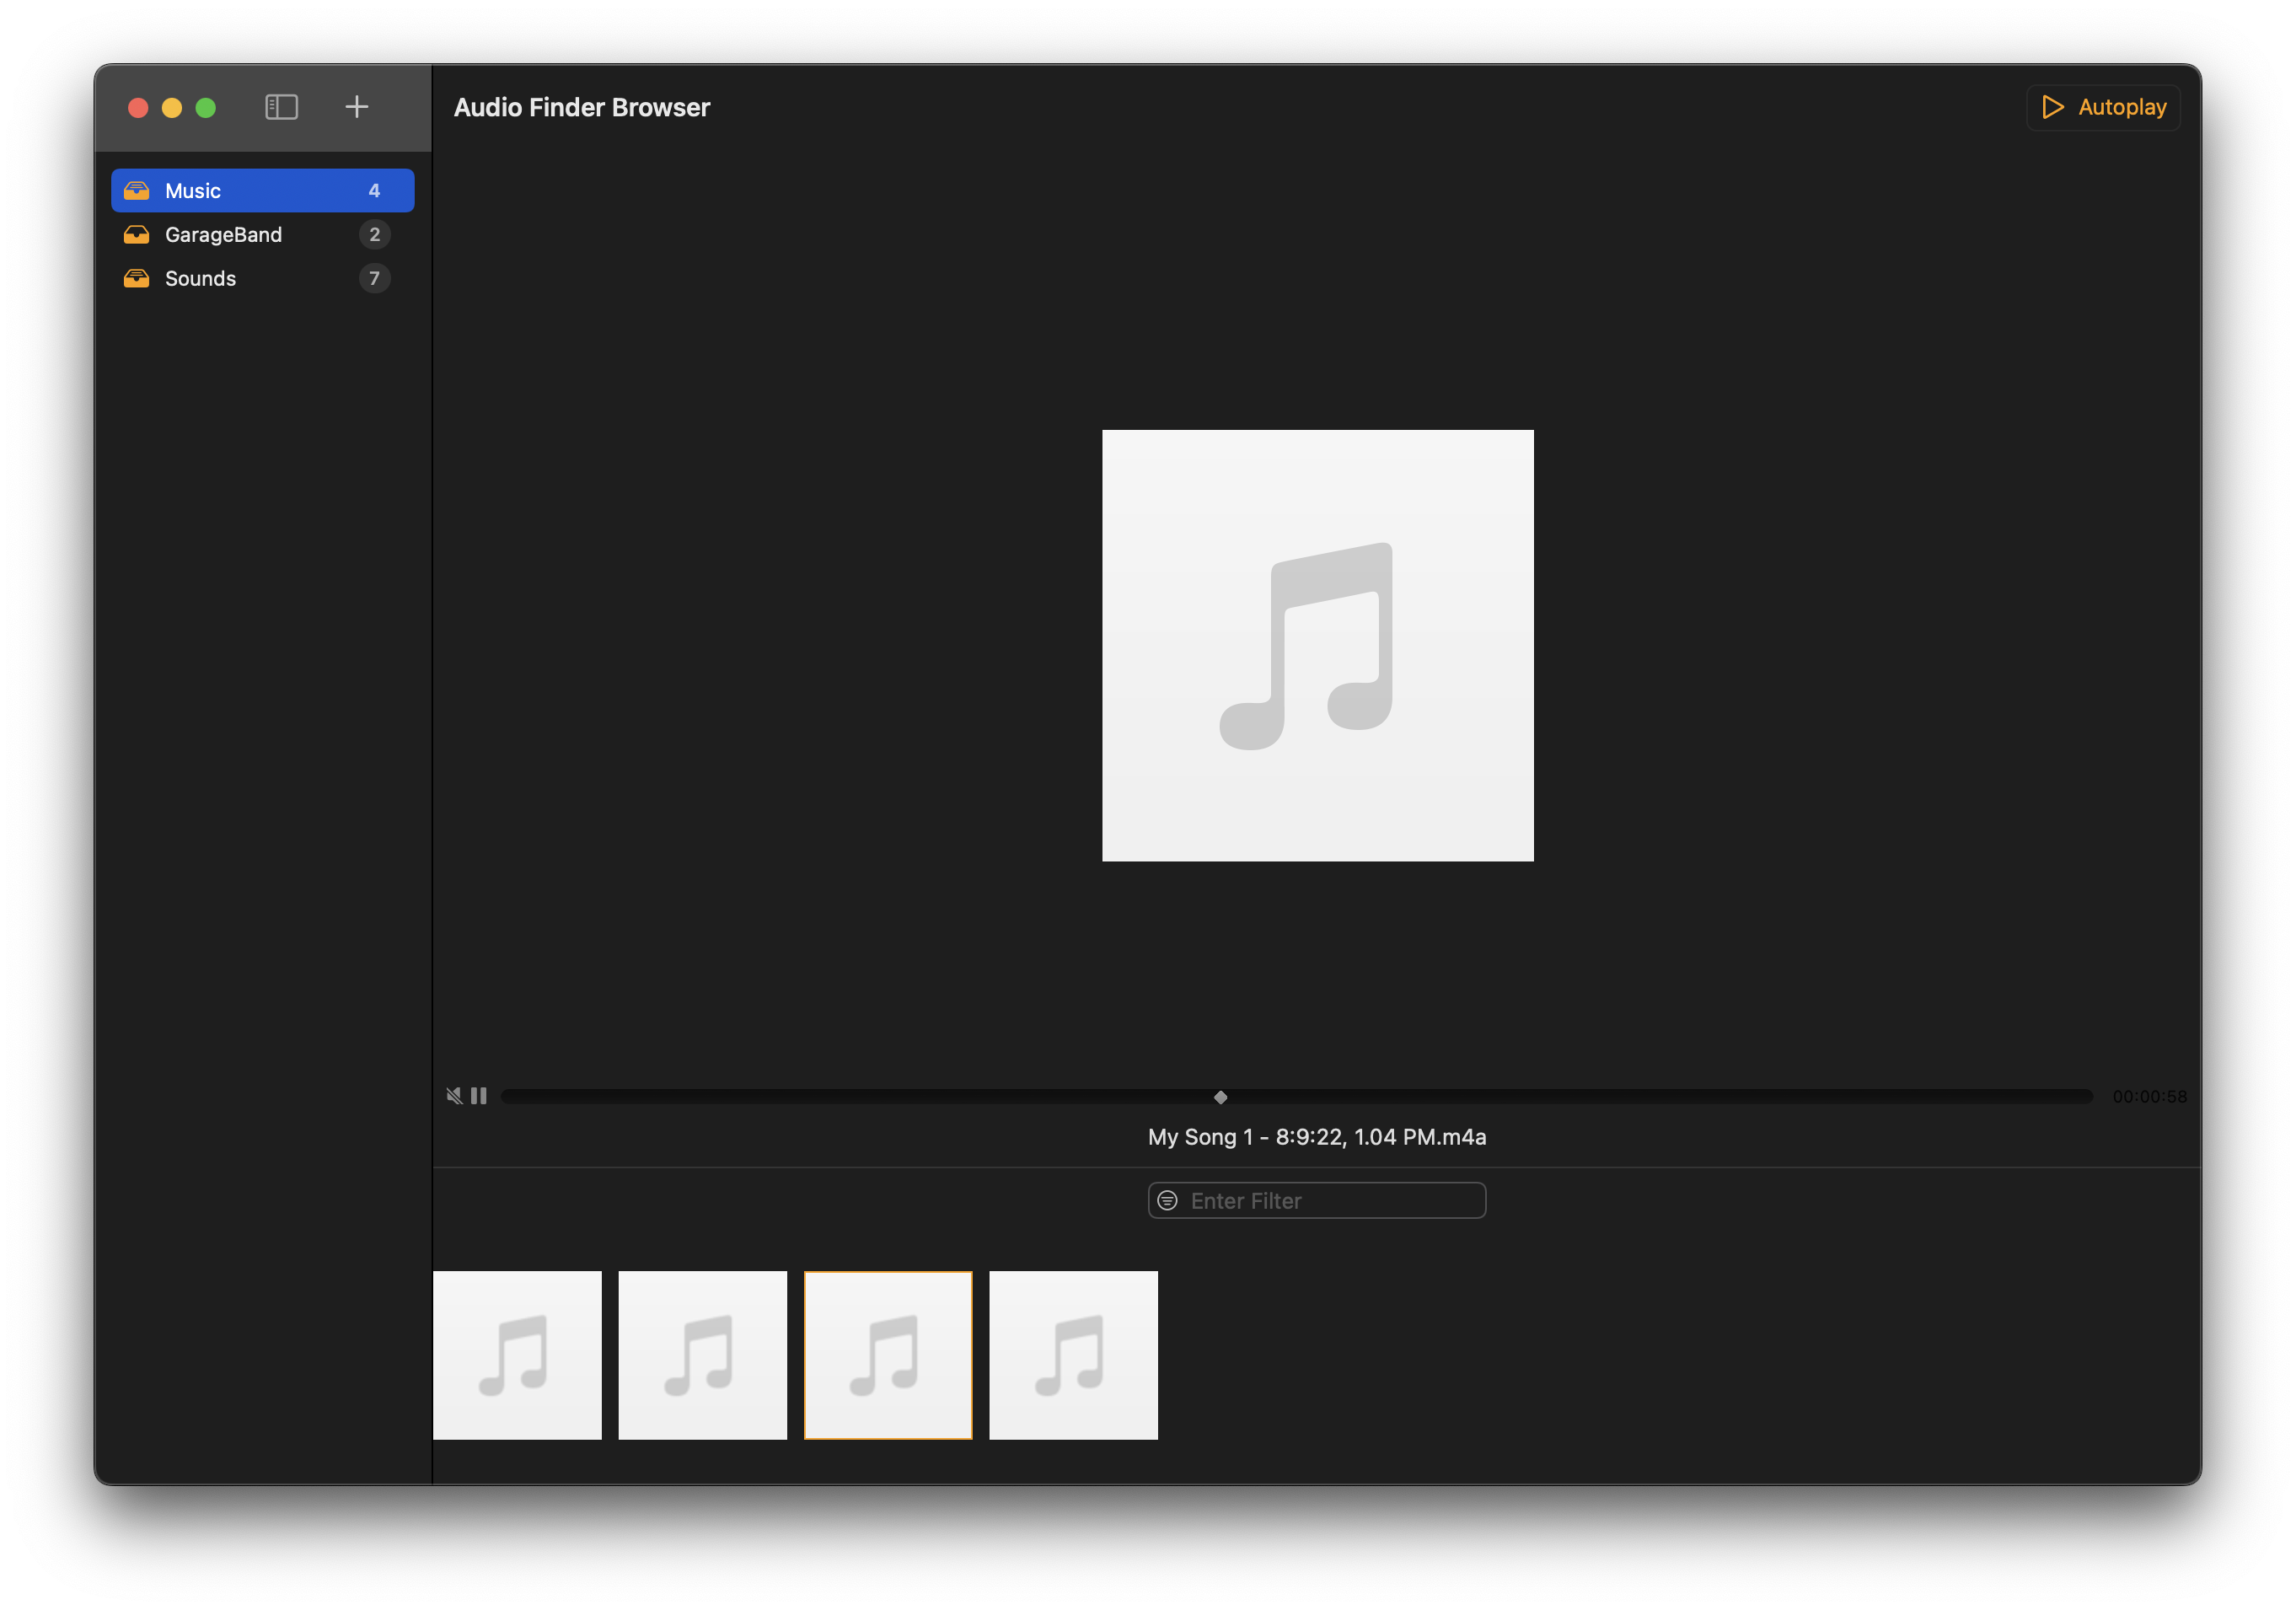 Audio Finder Browser for macOS